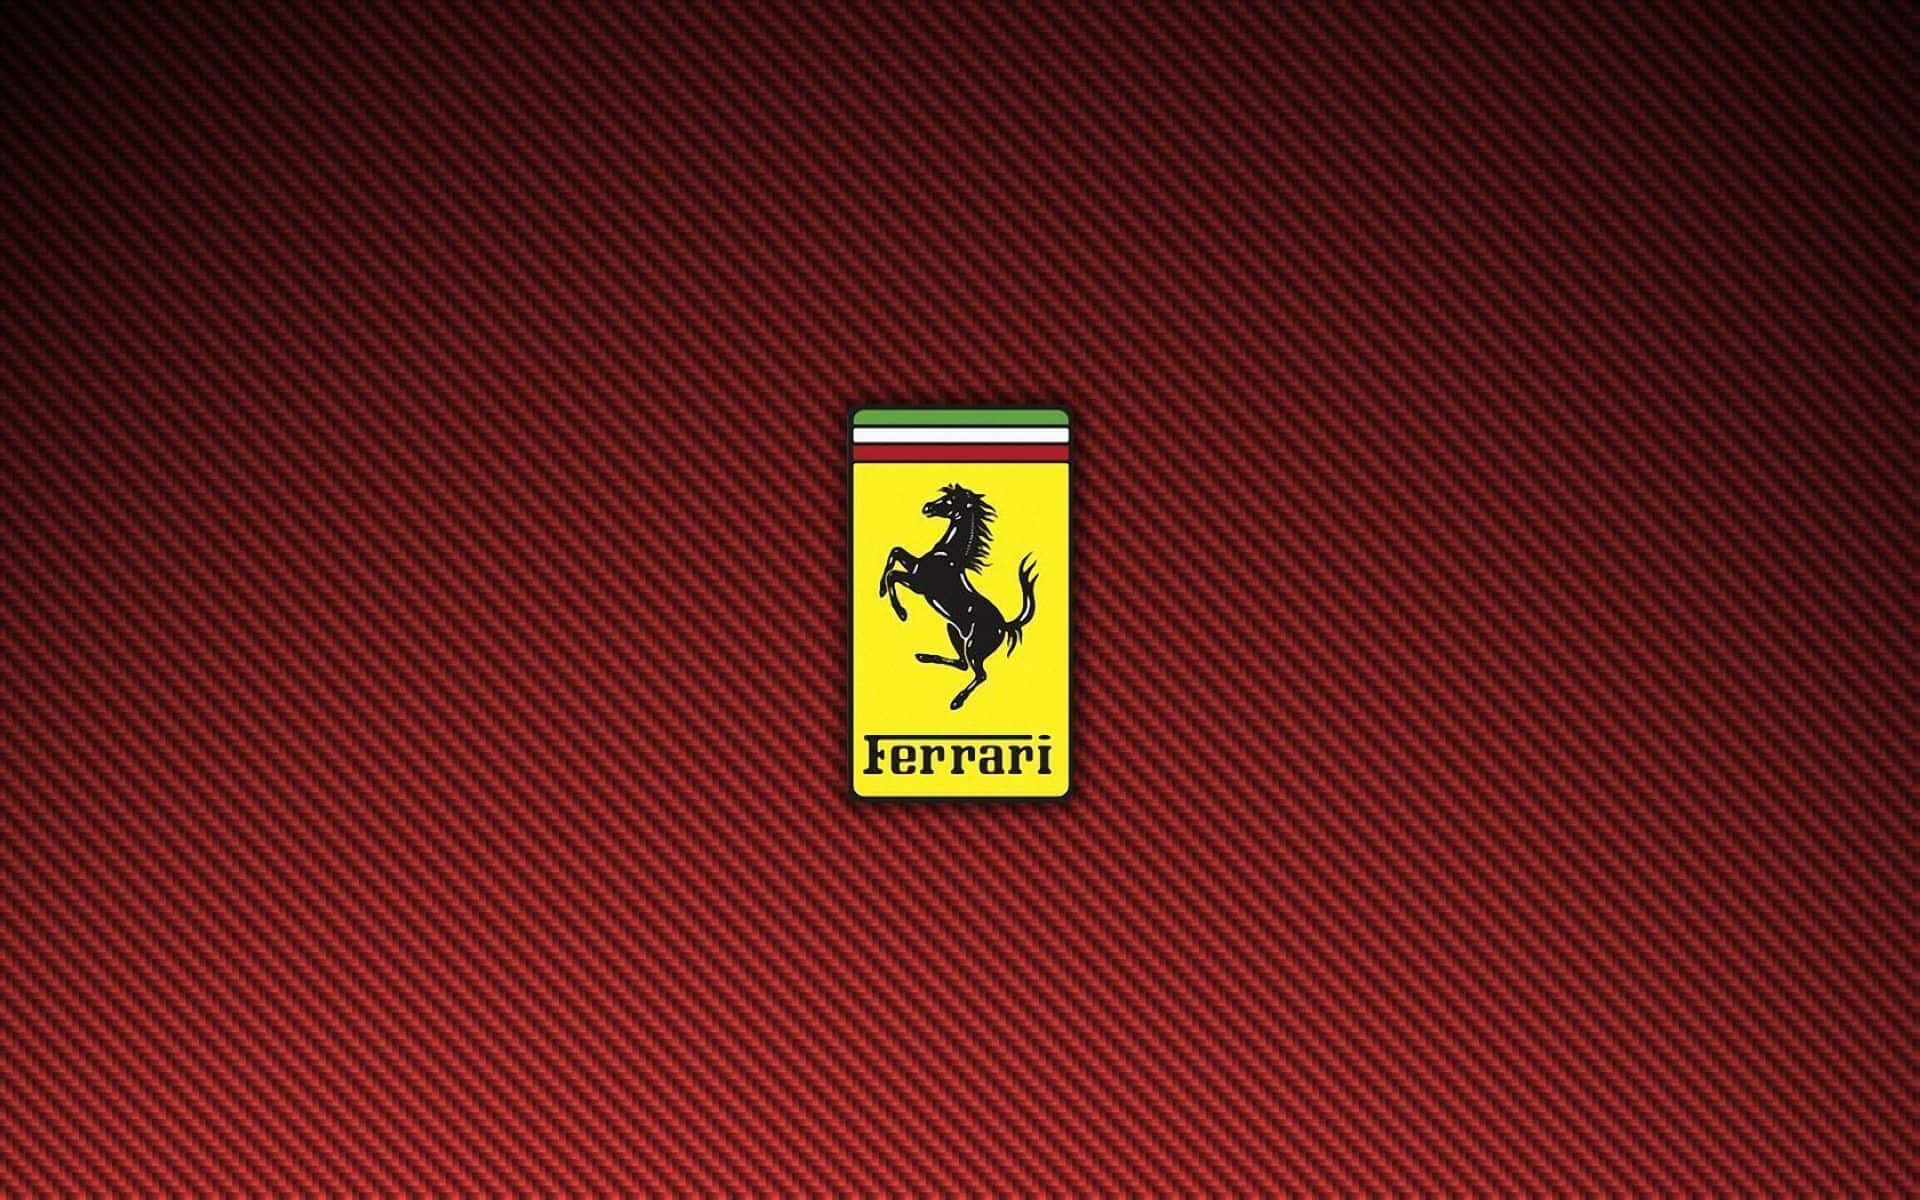 Papéisde Parede Em Hd Do Logo Da Ferrari, Papéis De Parede Do Logo Da Ferrari, Papéis De Parede Do Logo Da Ferrari, Papéis De Parede Do Logo Da Ferrari, Papéis De Parede Do Logo Da Ferrari, Papéis De Parede Do Logo Da Ferrari.